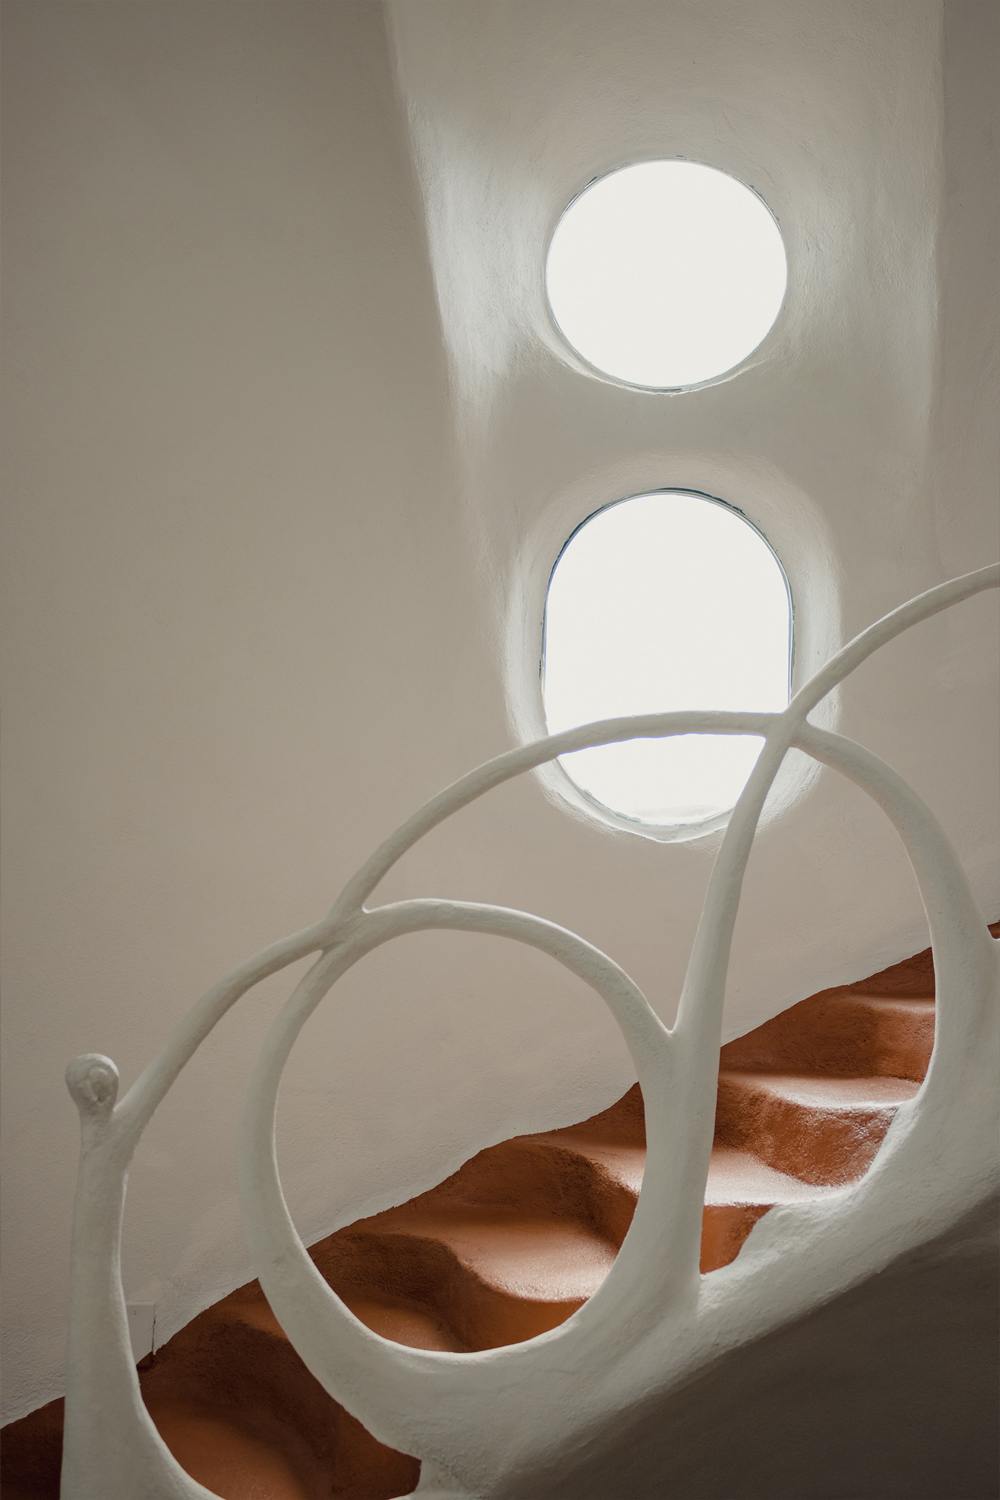 Escaliers en chaux naturelle design